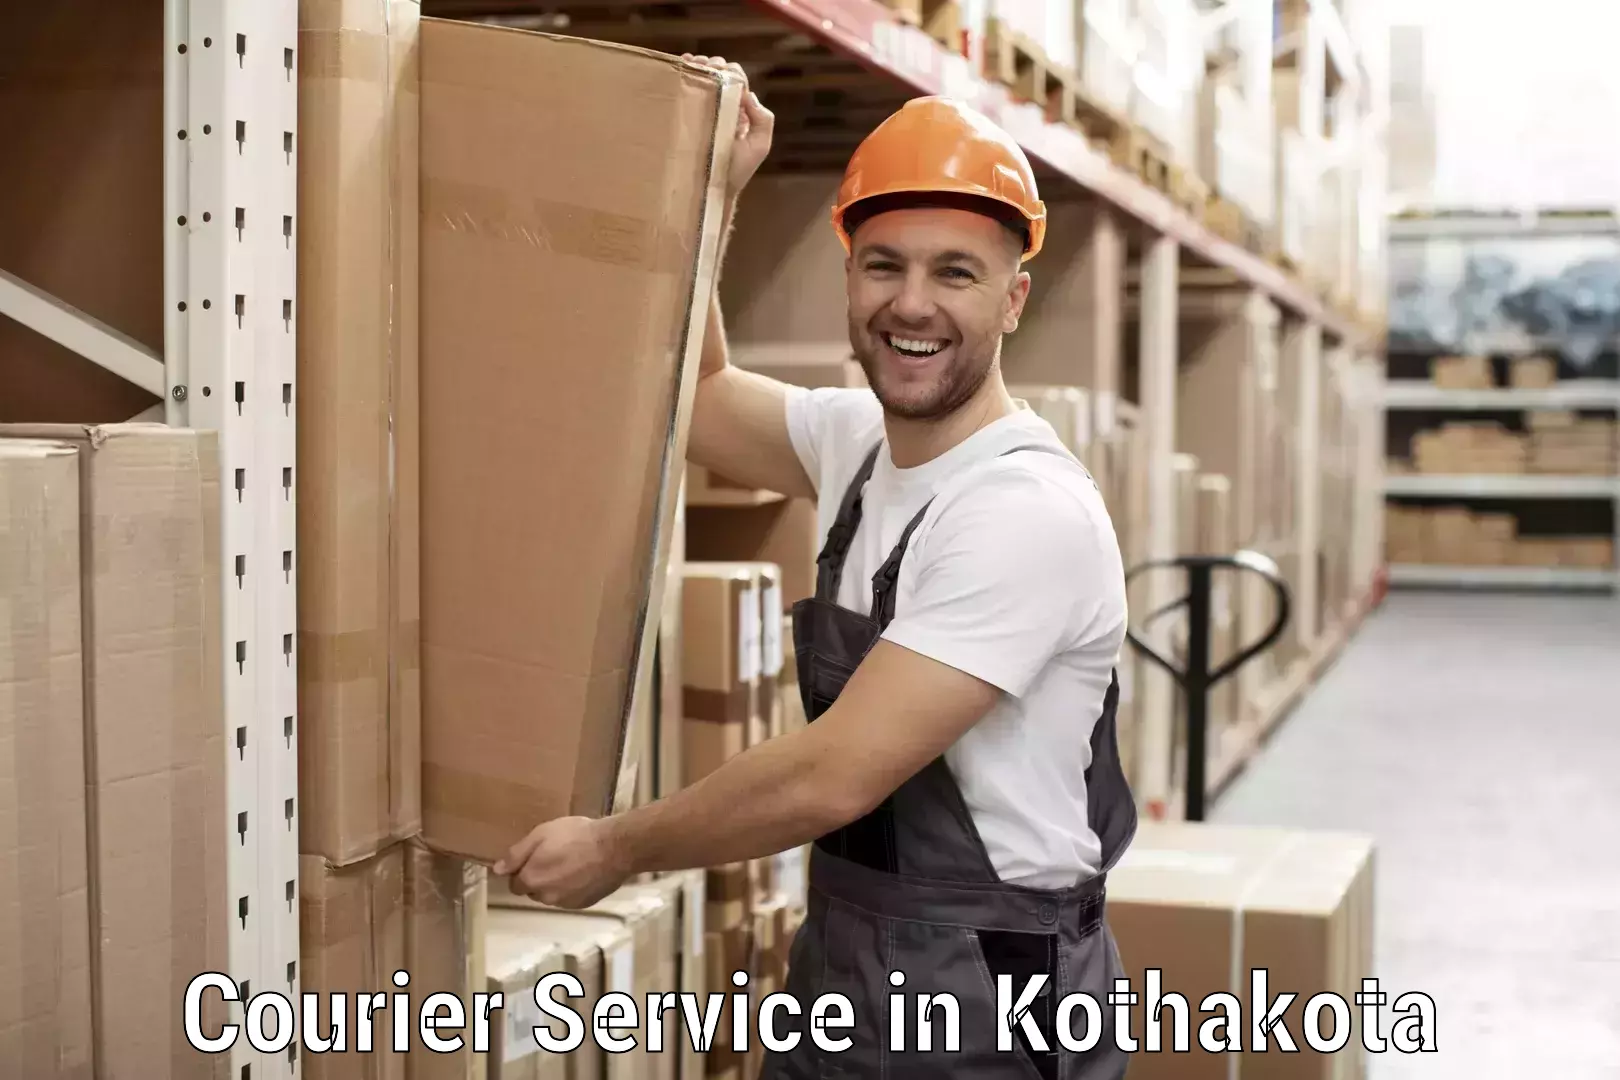 Bulk order courier in Kothakota